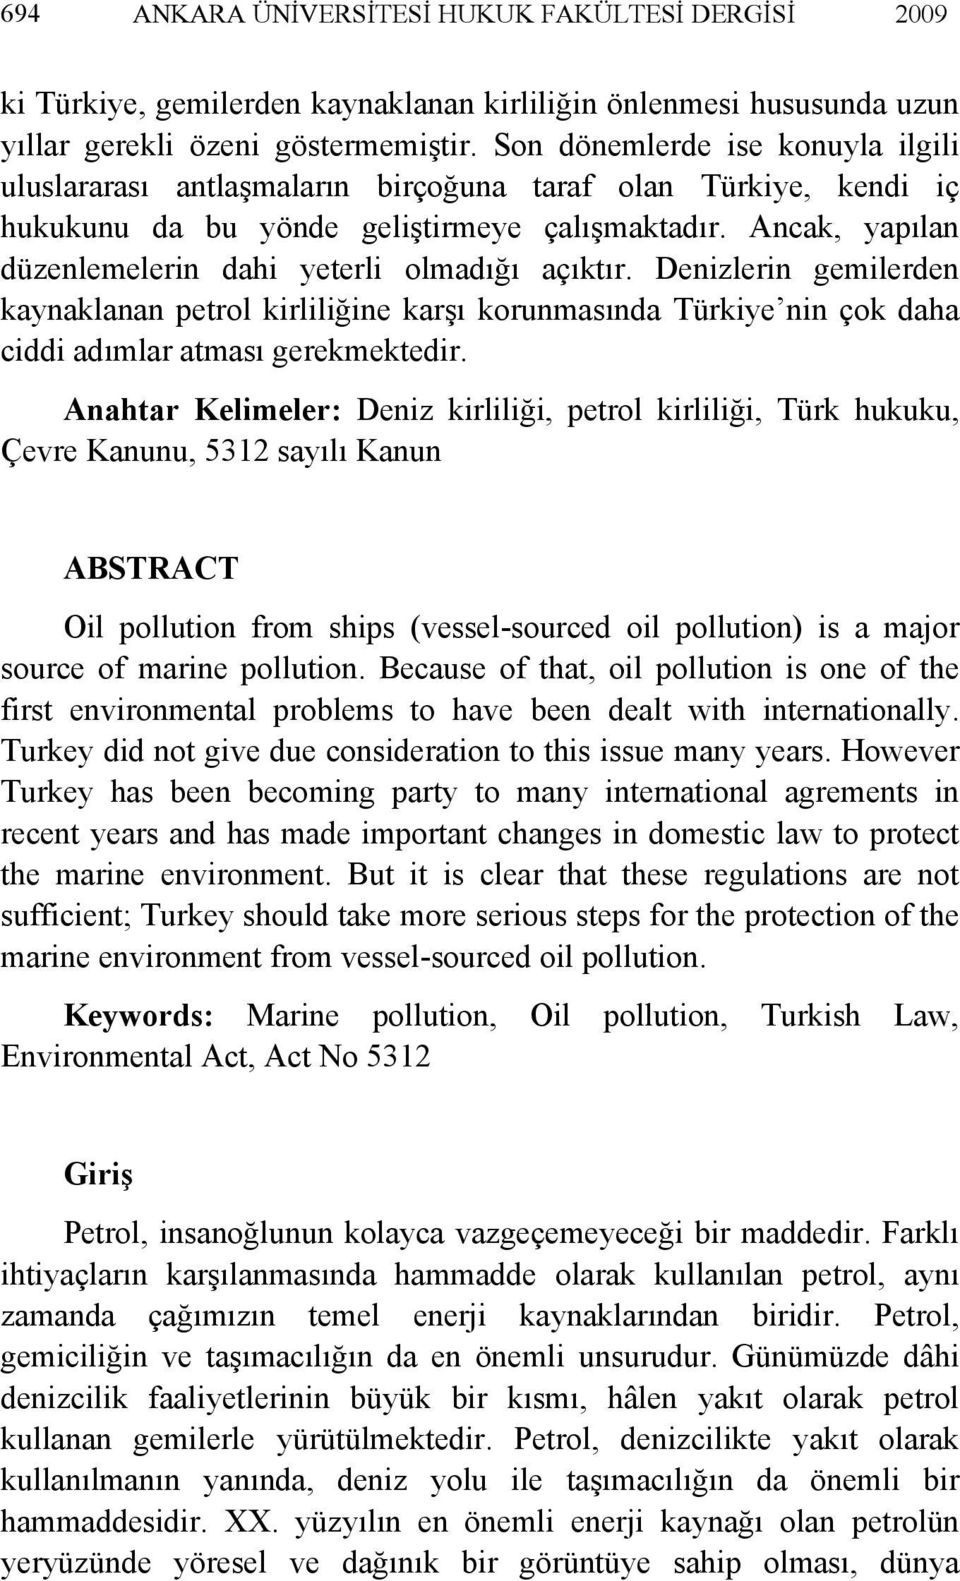 Ancak, yapılan düzenlemelerin dahi yeterli olmadığı açıktır. Denizlerin gemilerden kaynaklanan petrol kirliliğine karşı korunmasında Türkiye nin çok daha ciddi adımlar atması gerekmektedir.